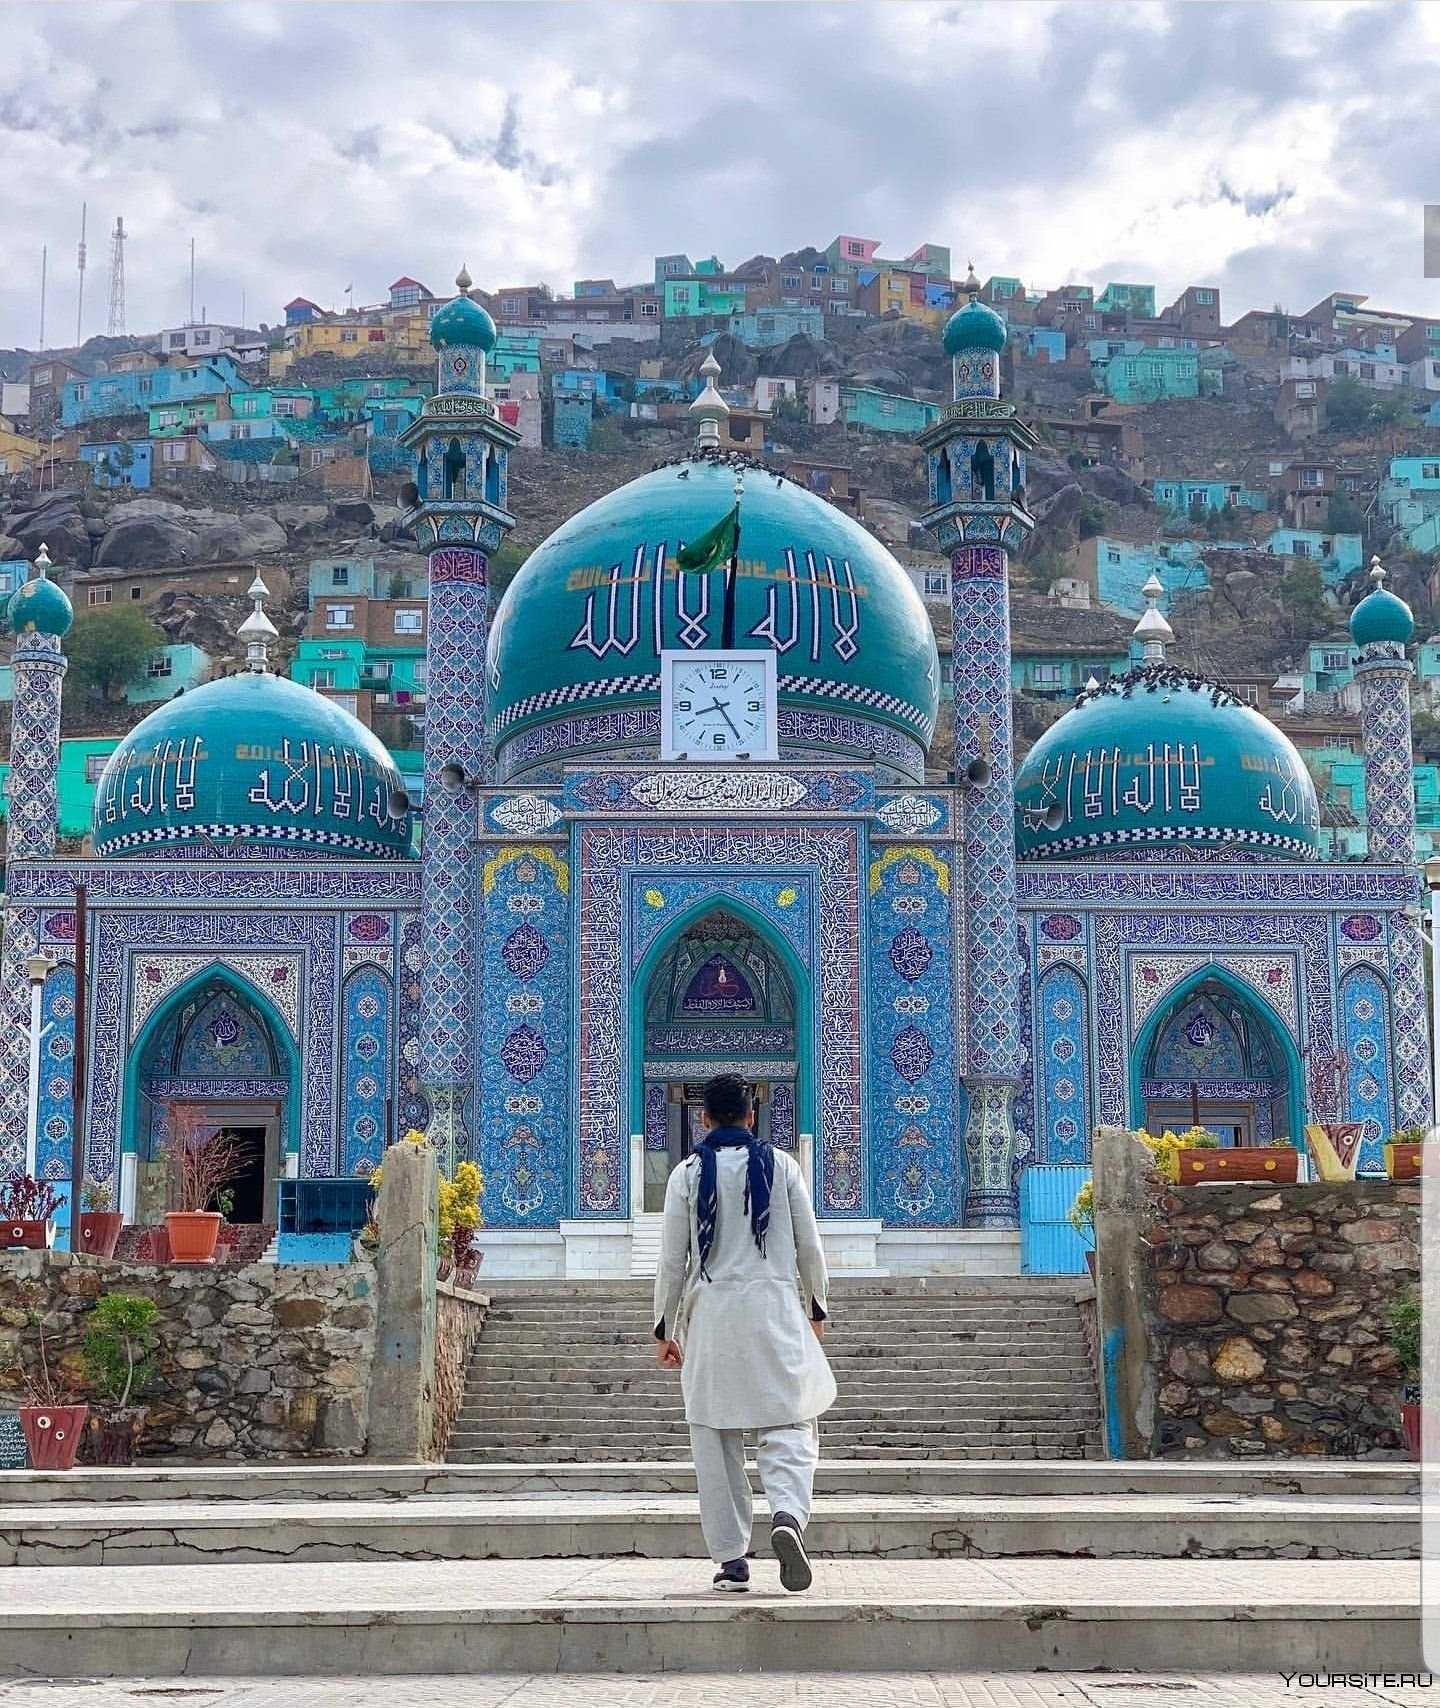 Достопримечательности афганистана | чем заняться в афганистане - путеводитель по туристическим местам